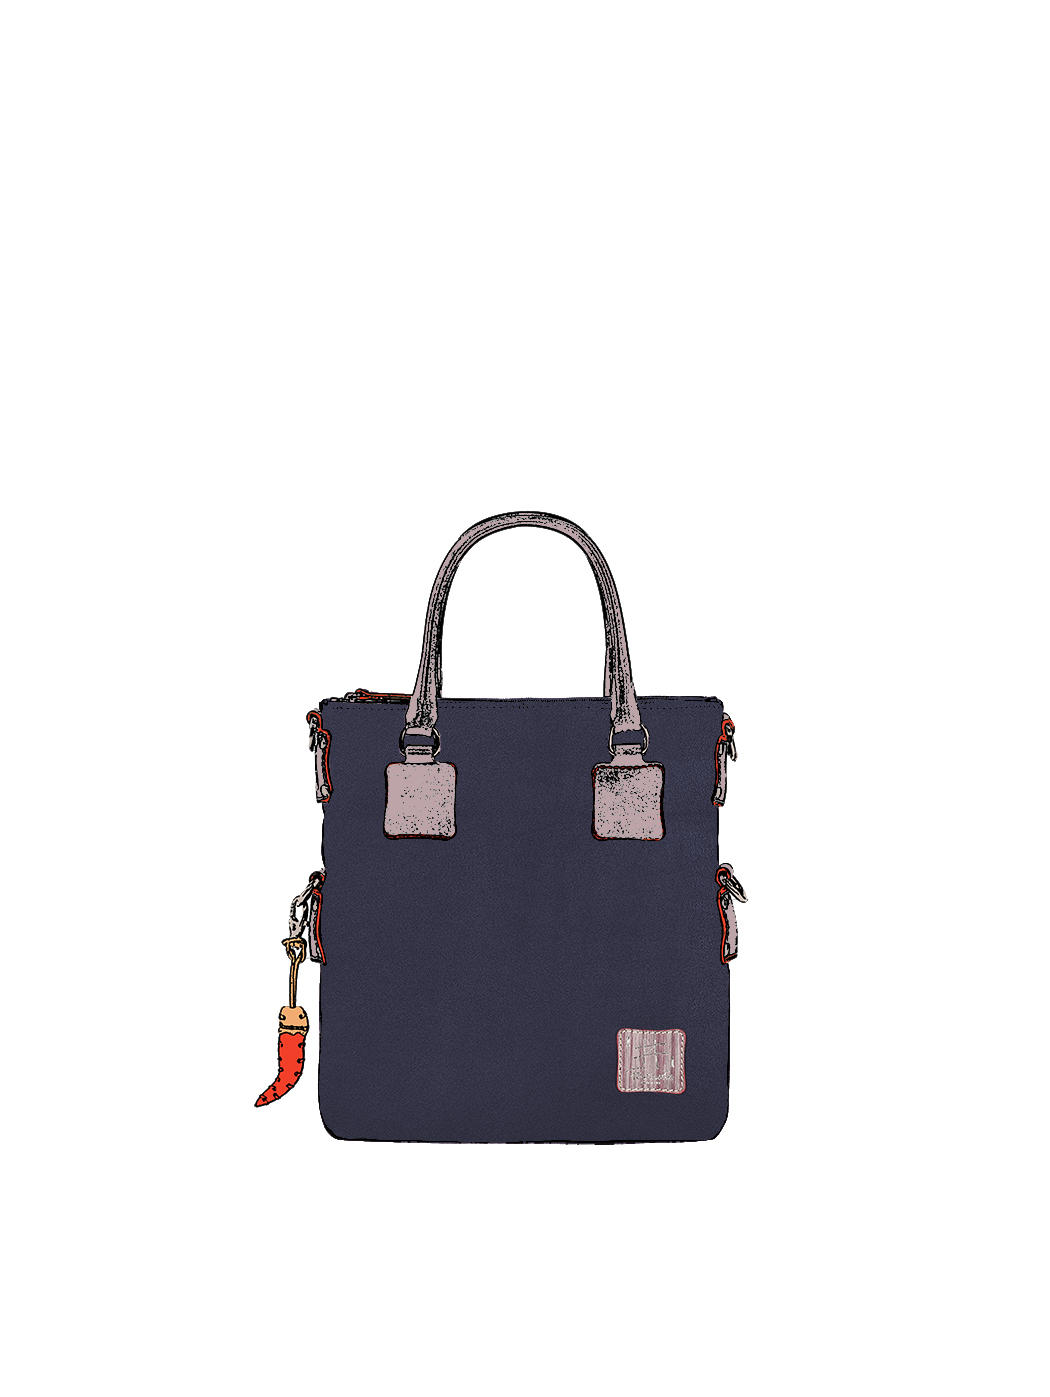 Дизайнерская мини - сумка из коллекции Fortunata синего цвета